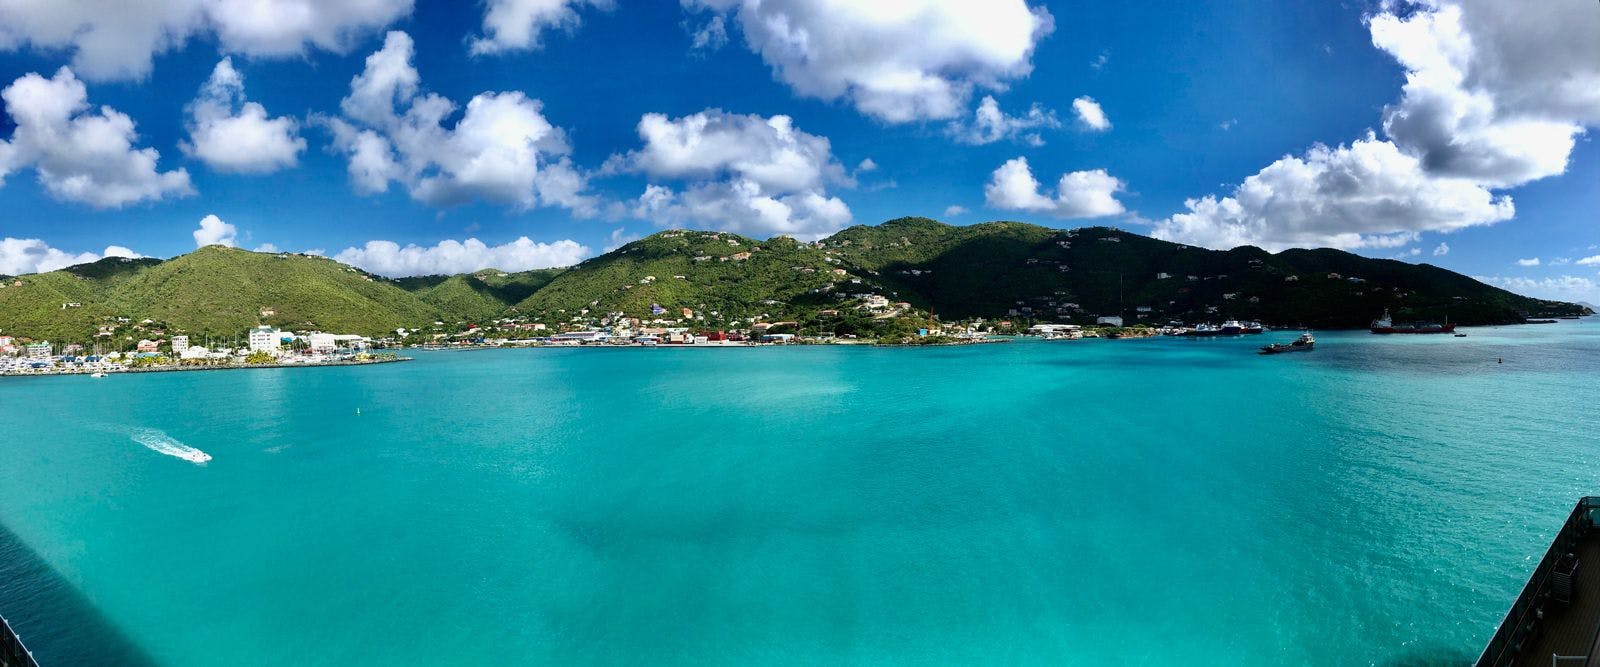 Panoramic view of Barbados coastline